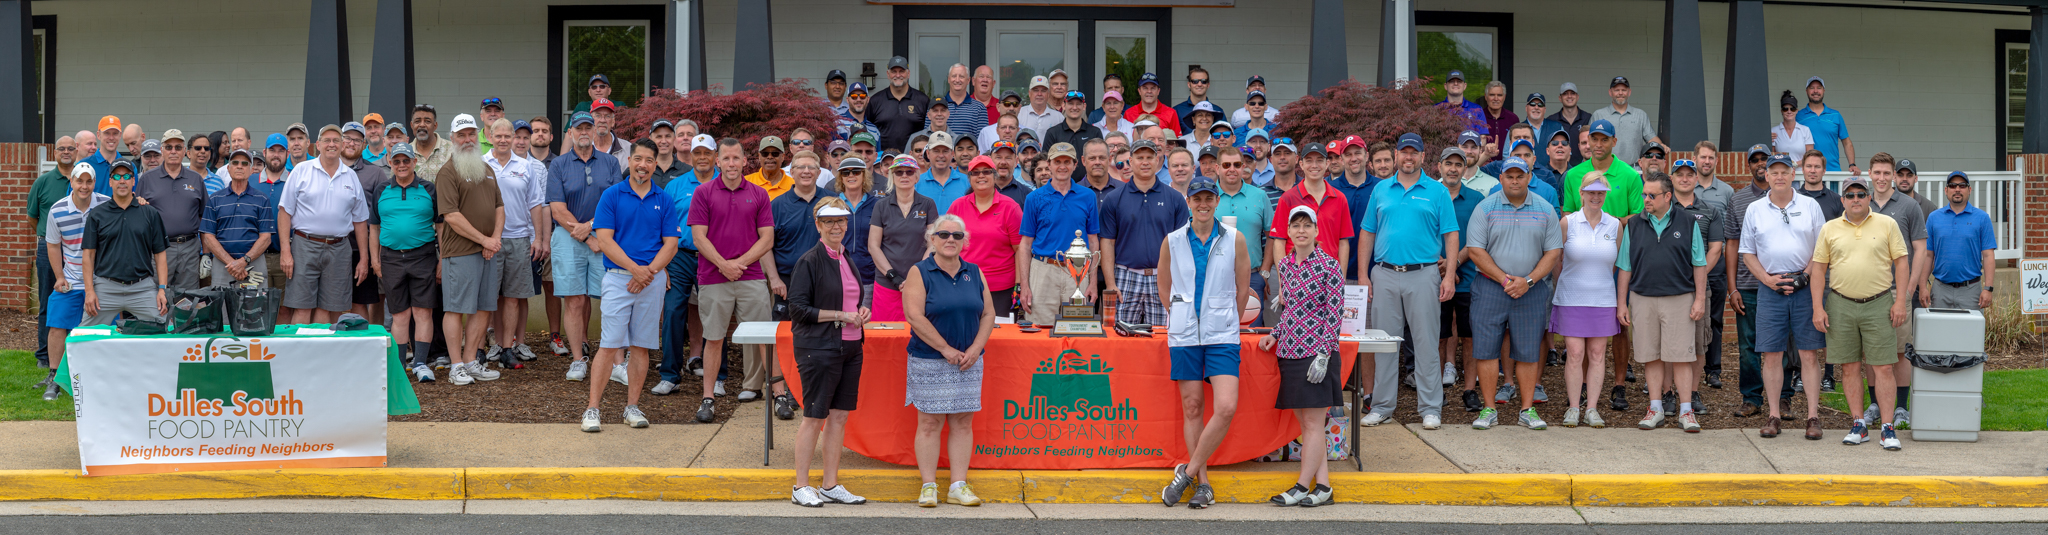 2019 Golf Tournament Participants